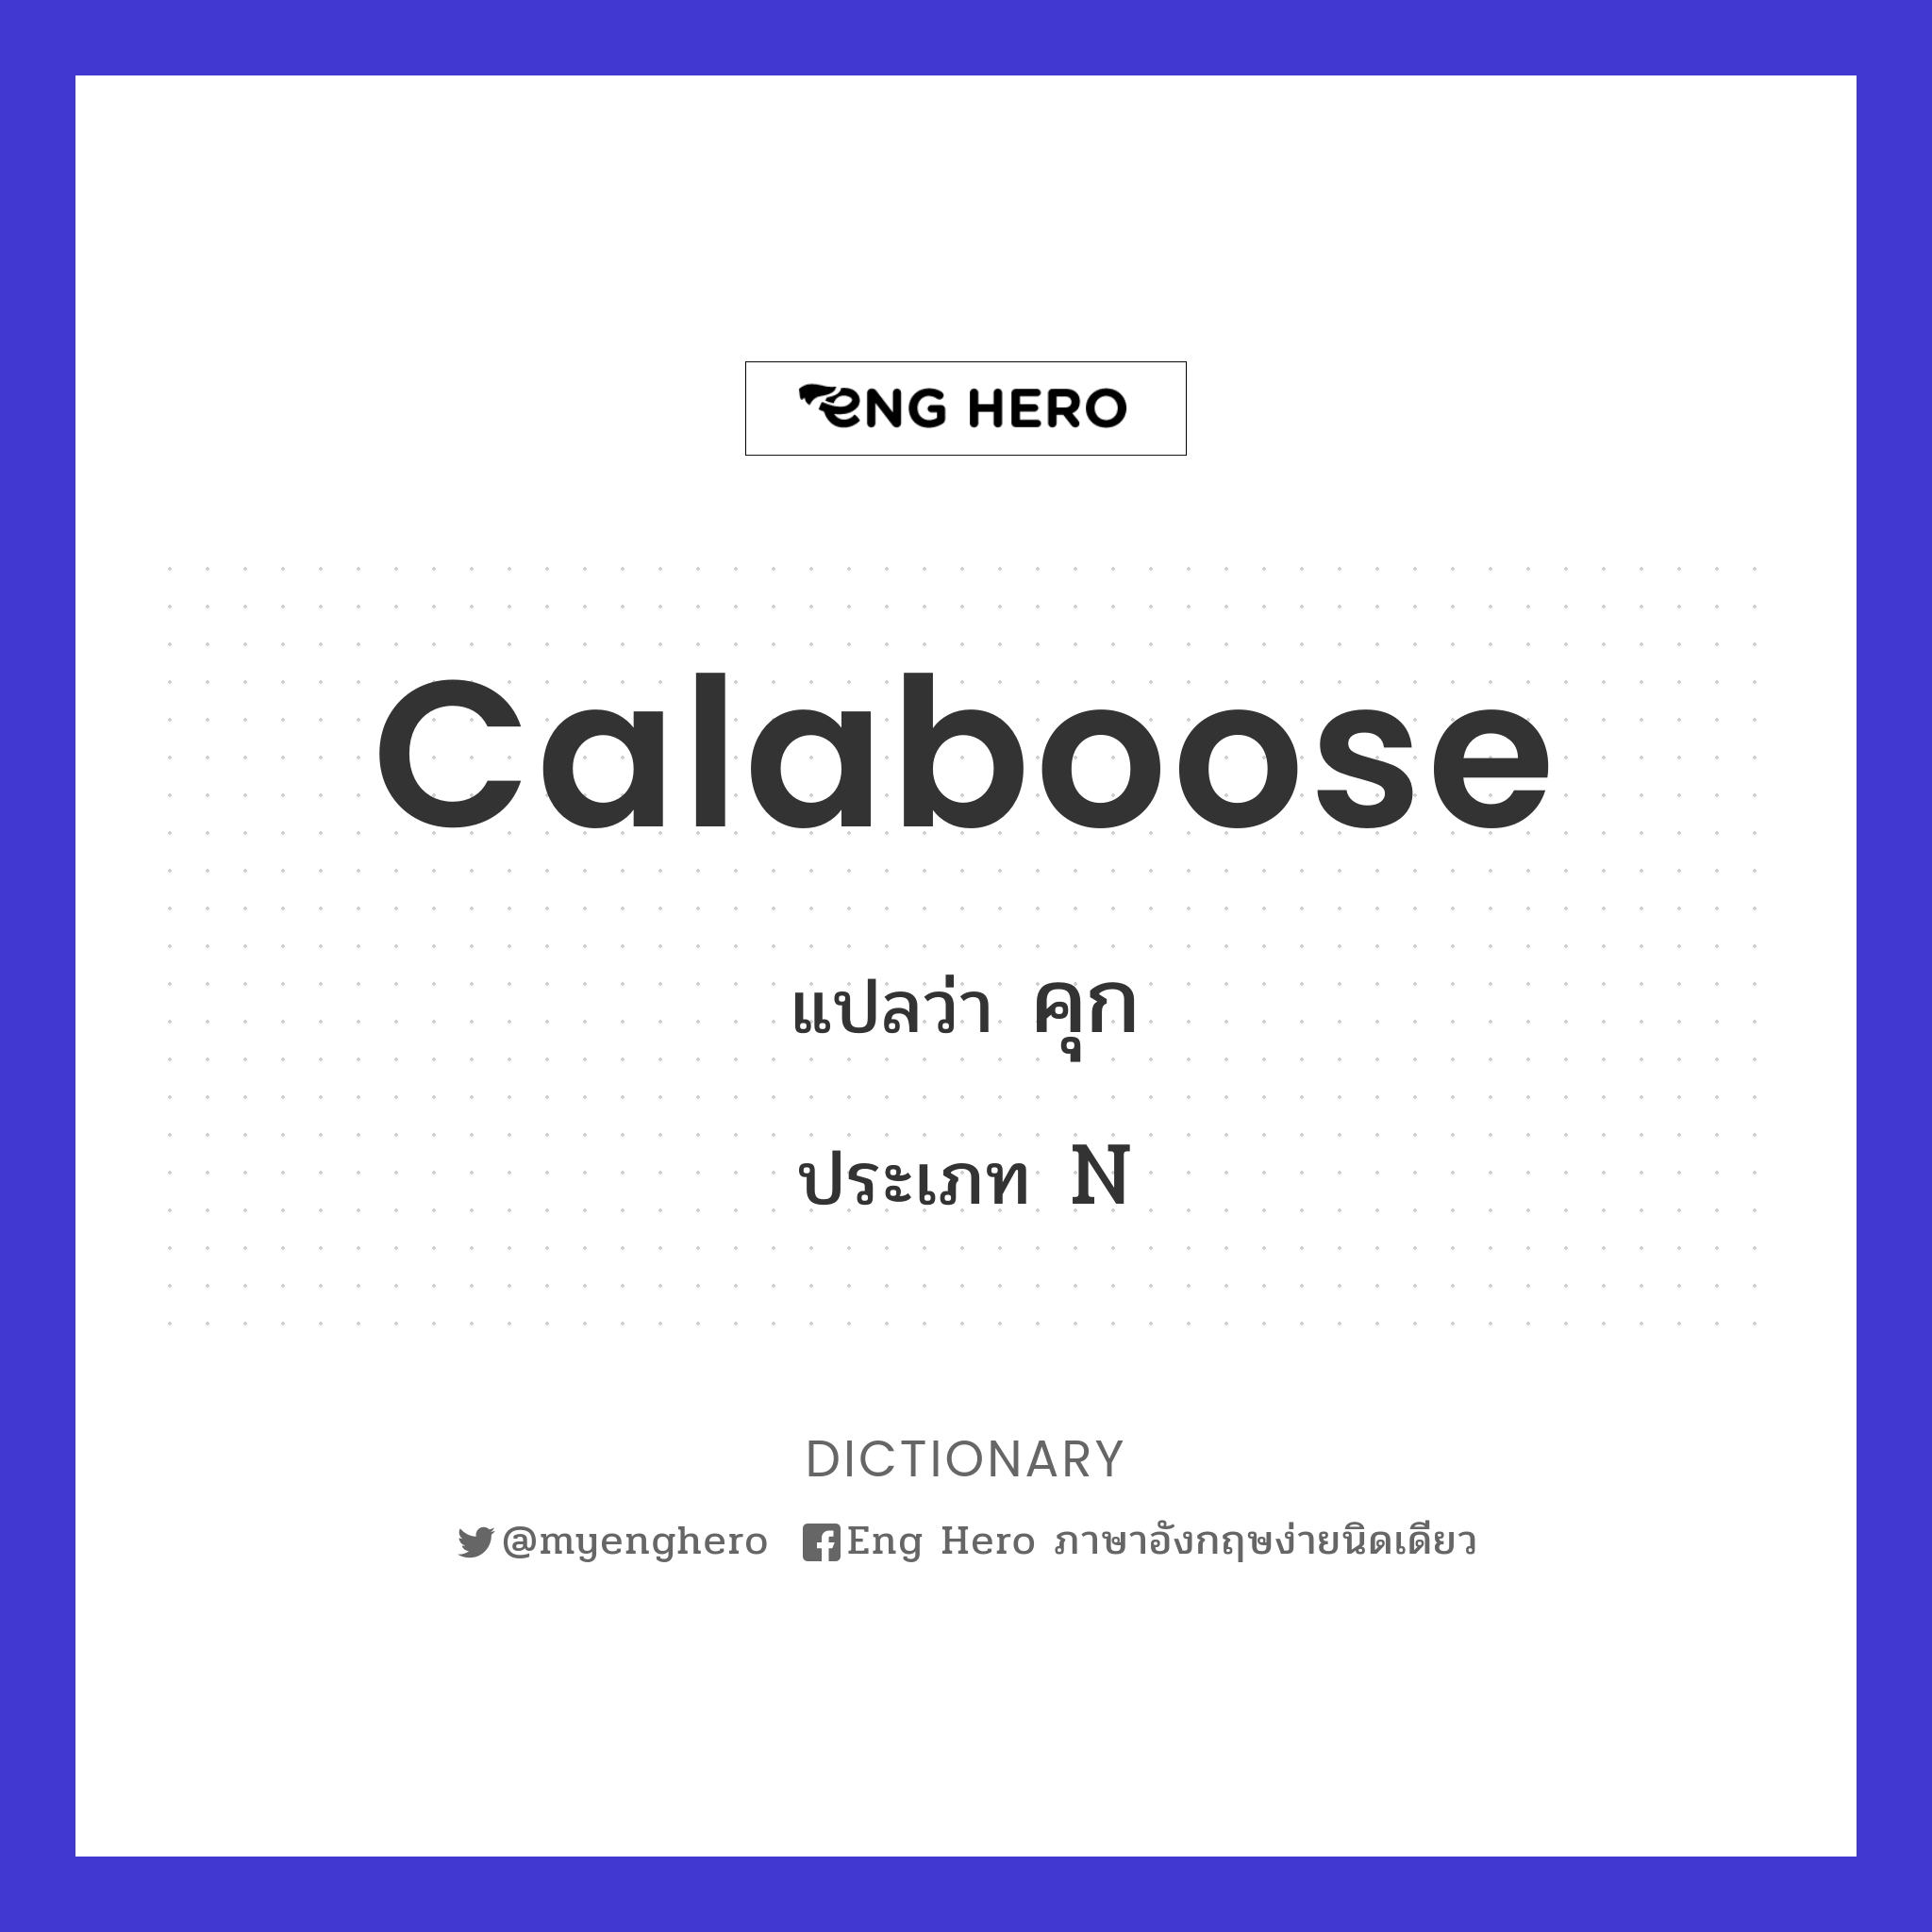 calaboose